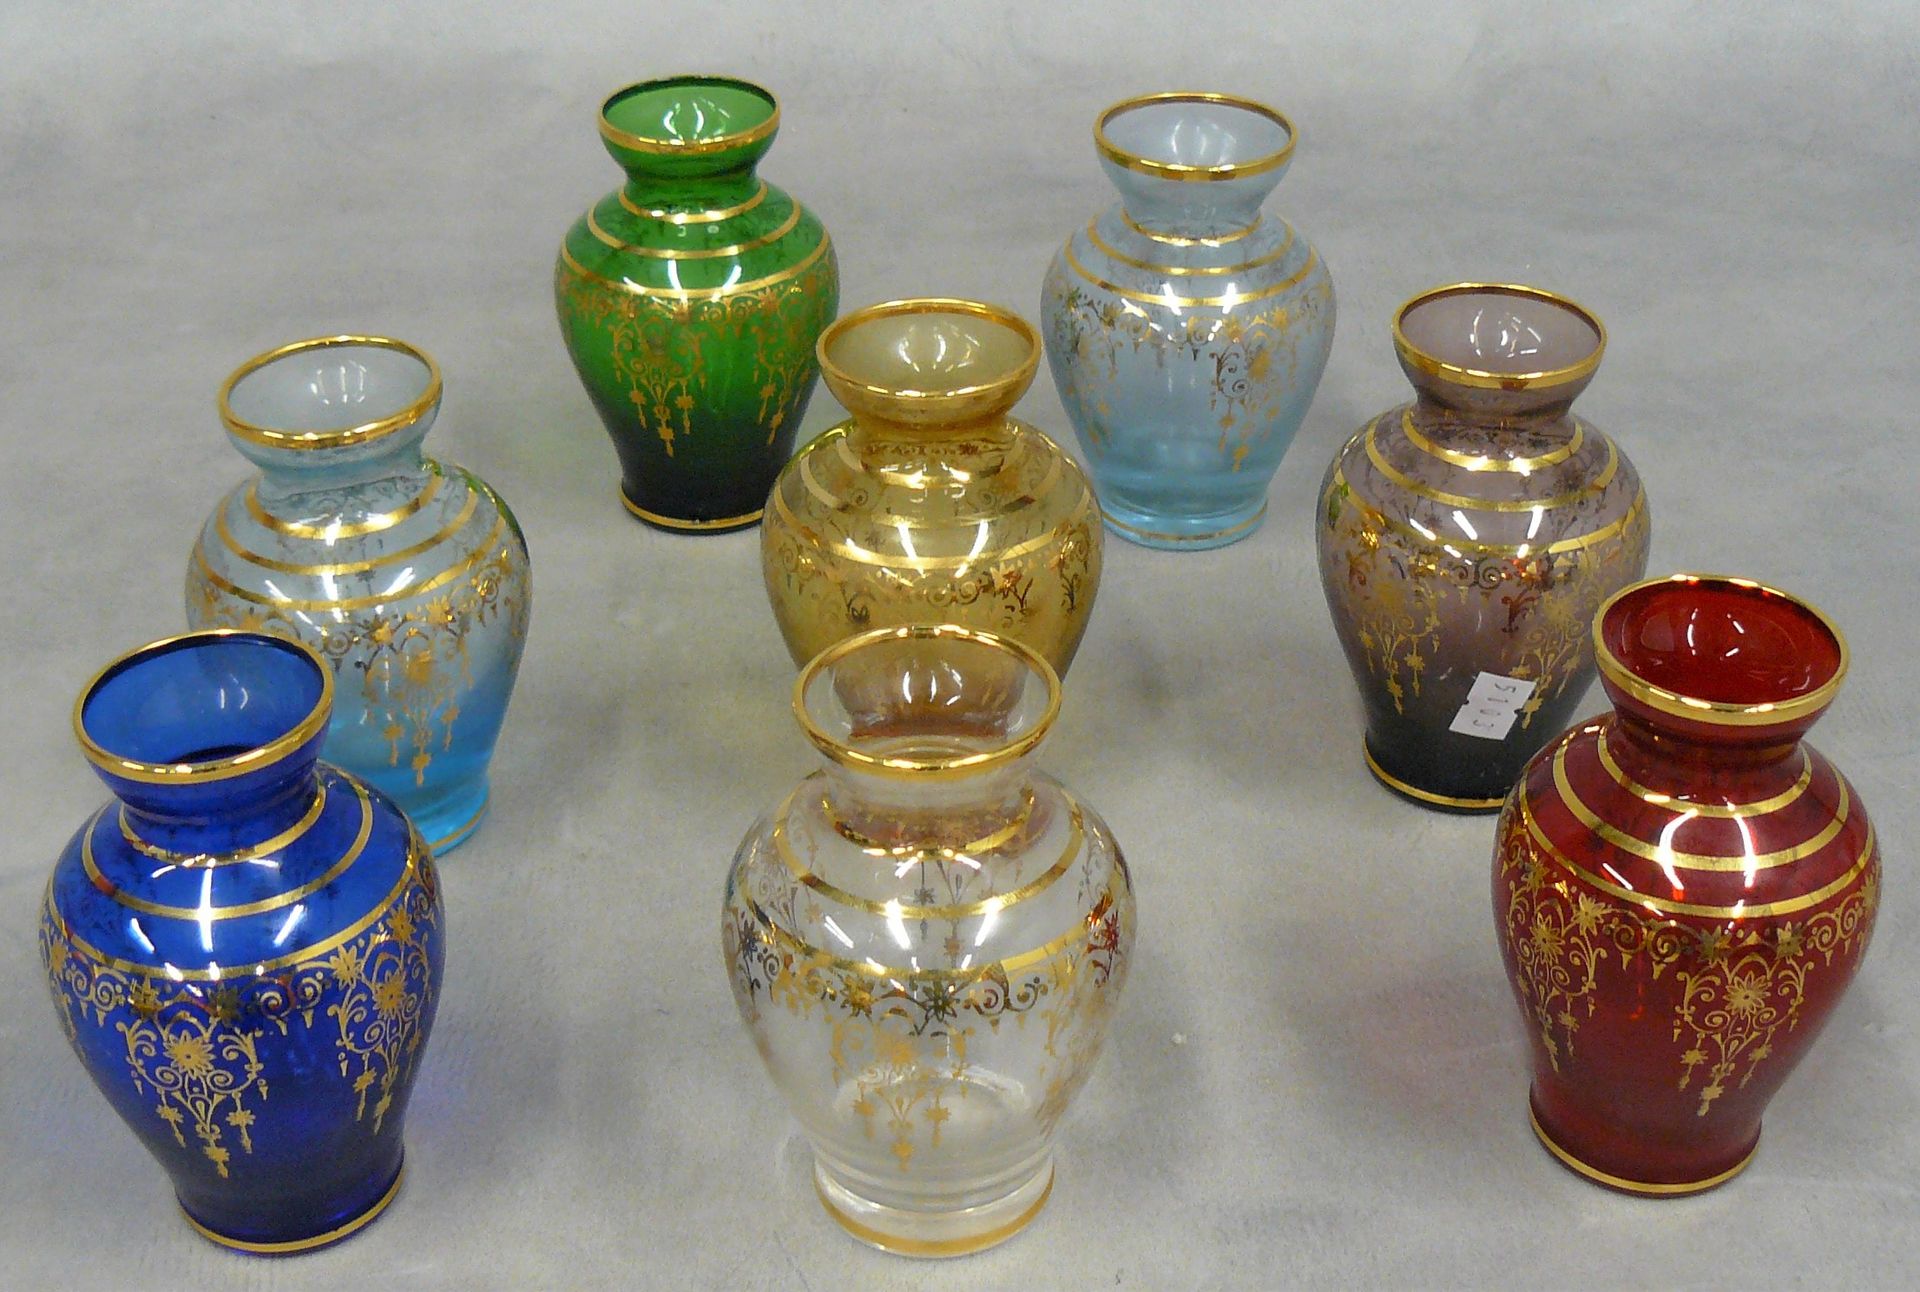 Null huit petits vases en verres colorés et décor de lambrequins dorés - H 11 cm